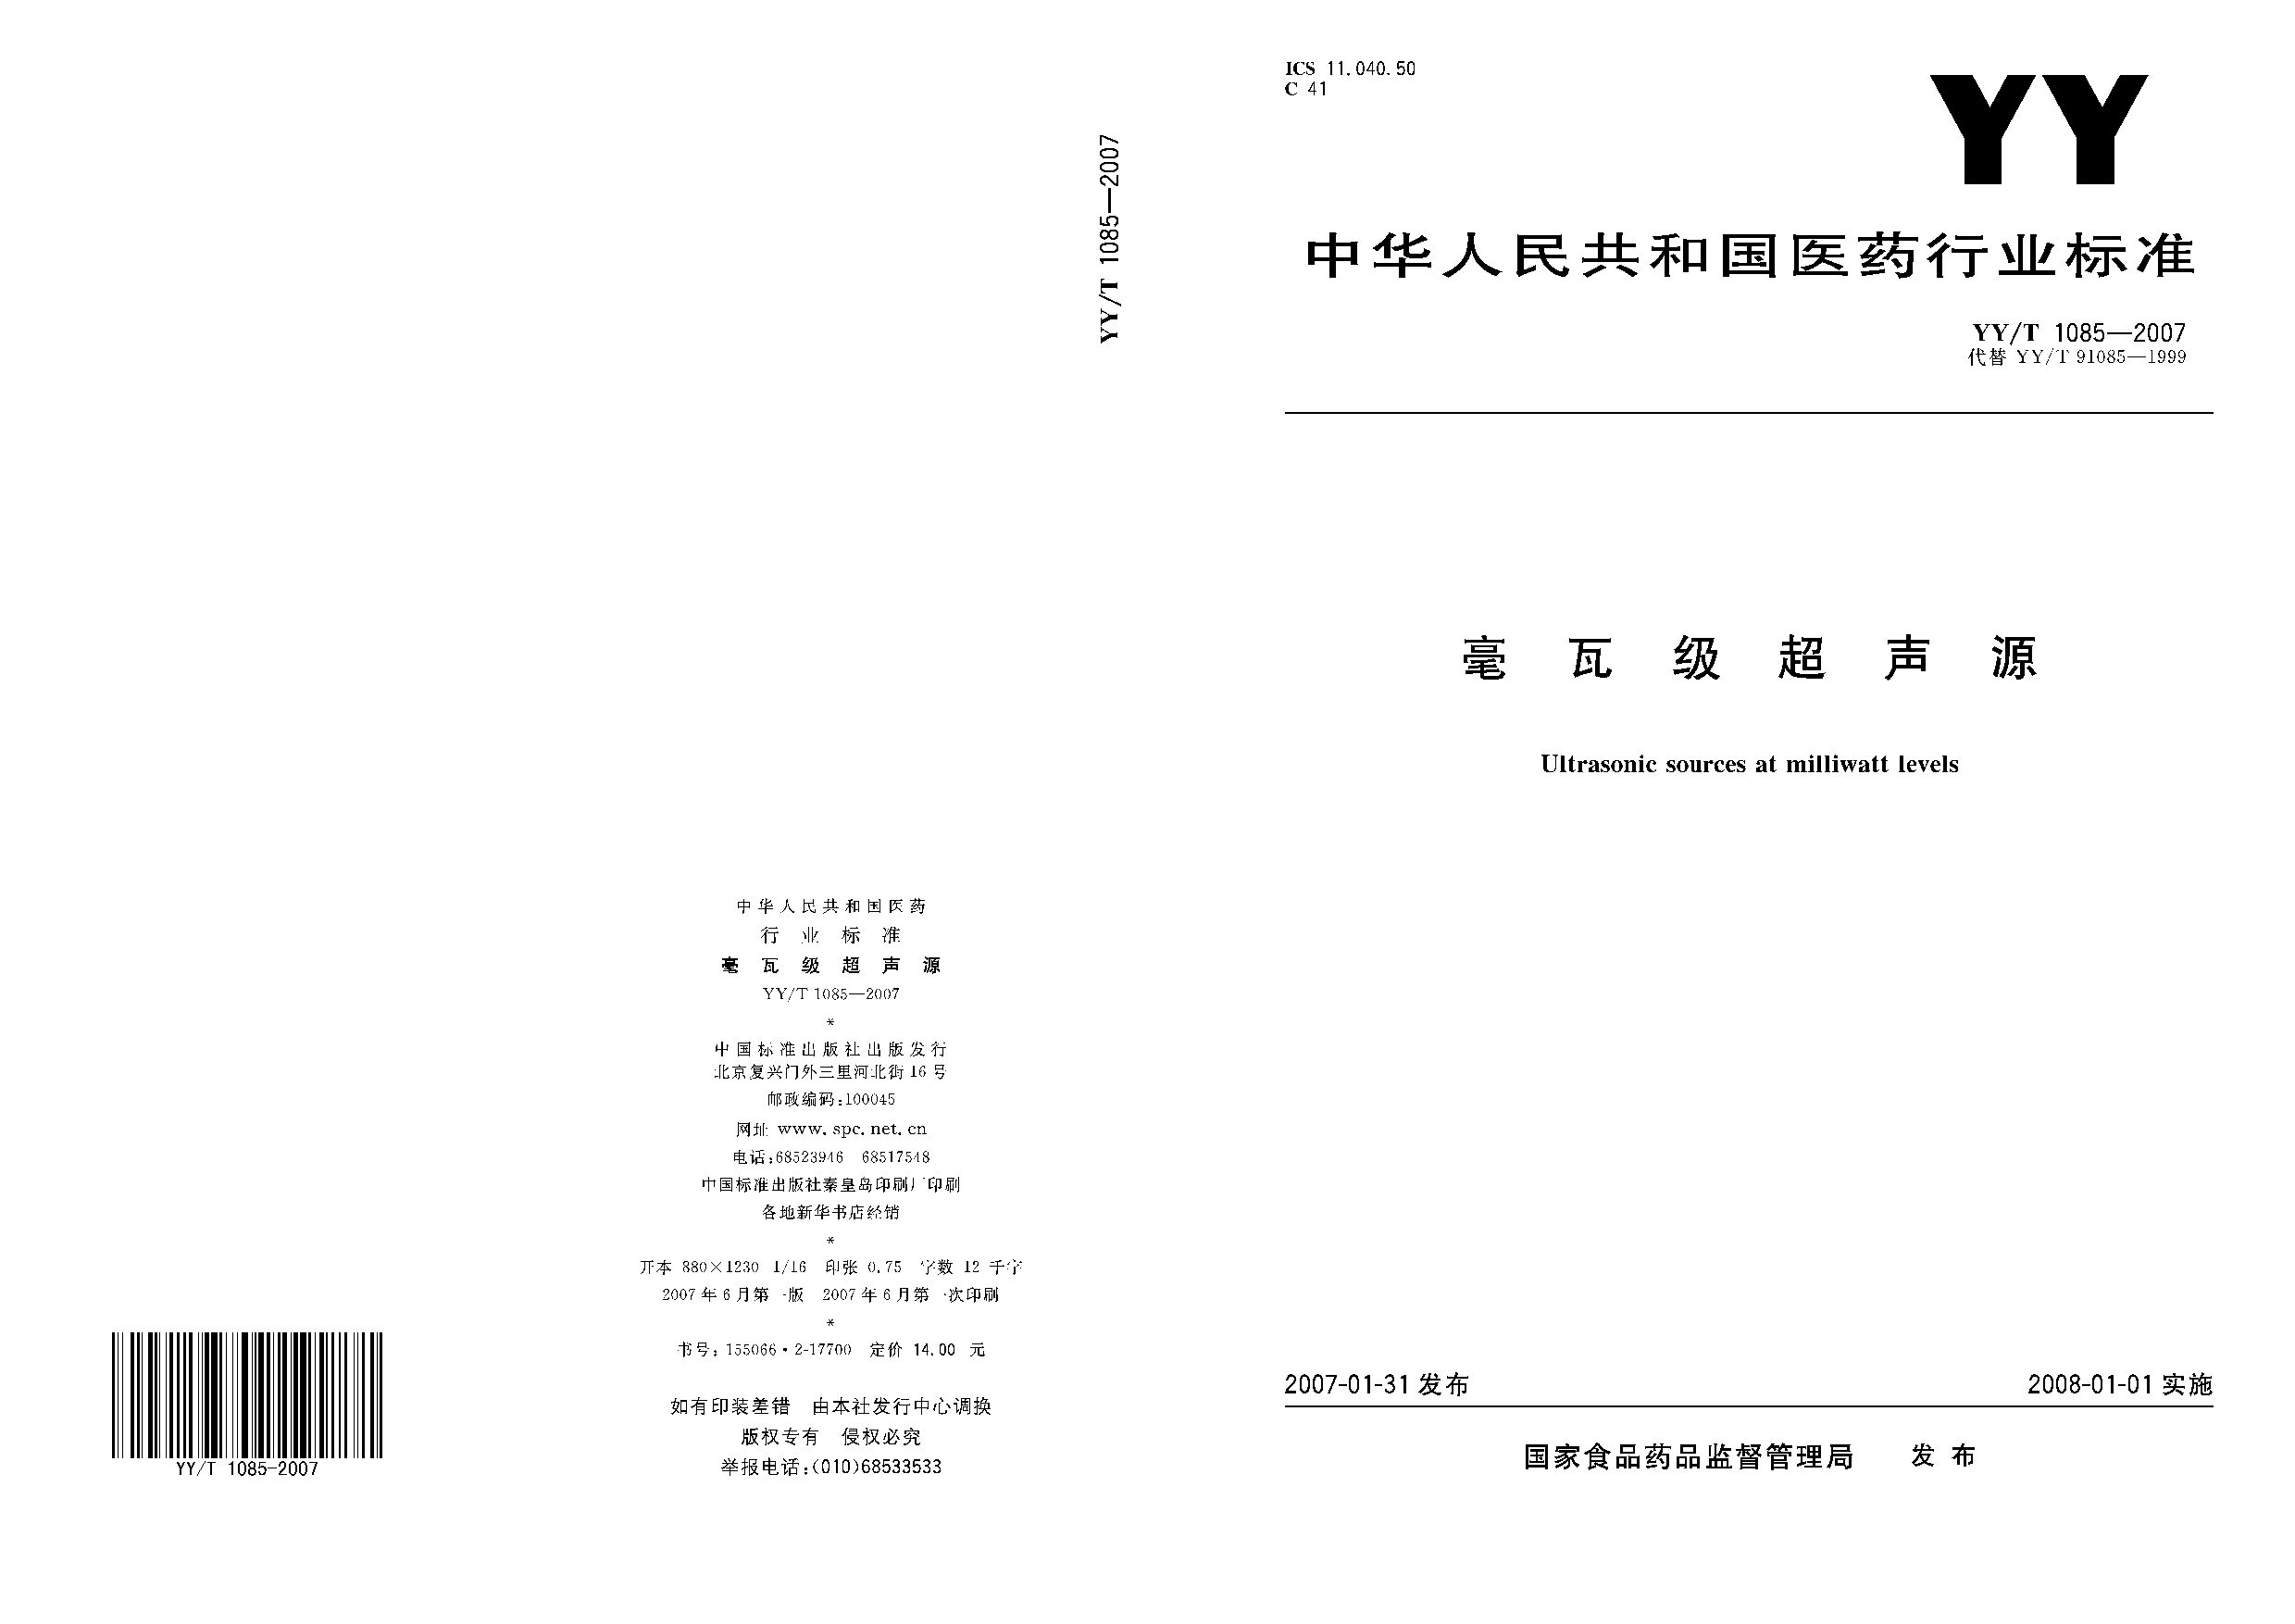 YY/T 1085-2007